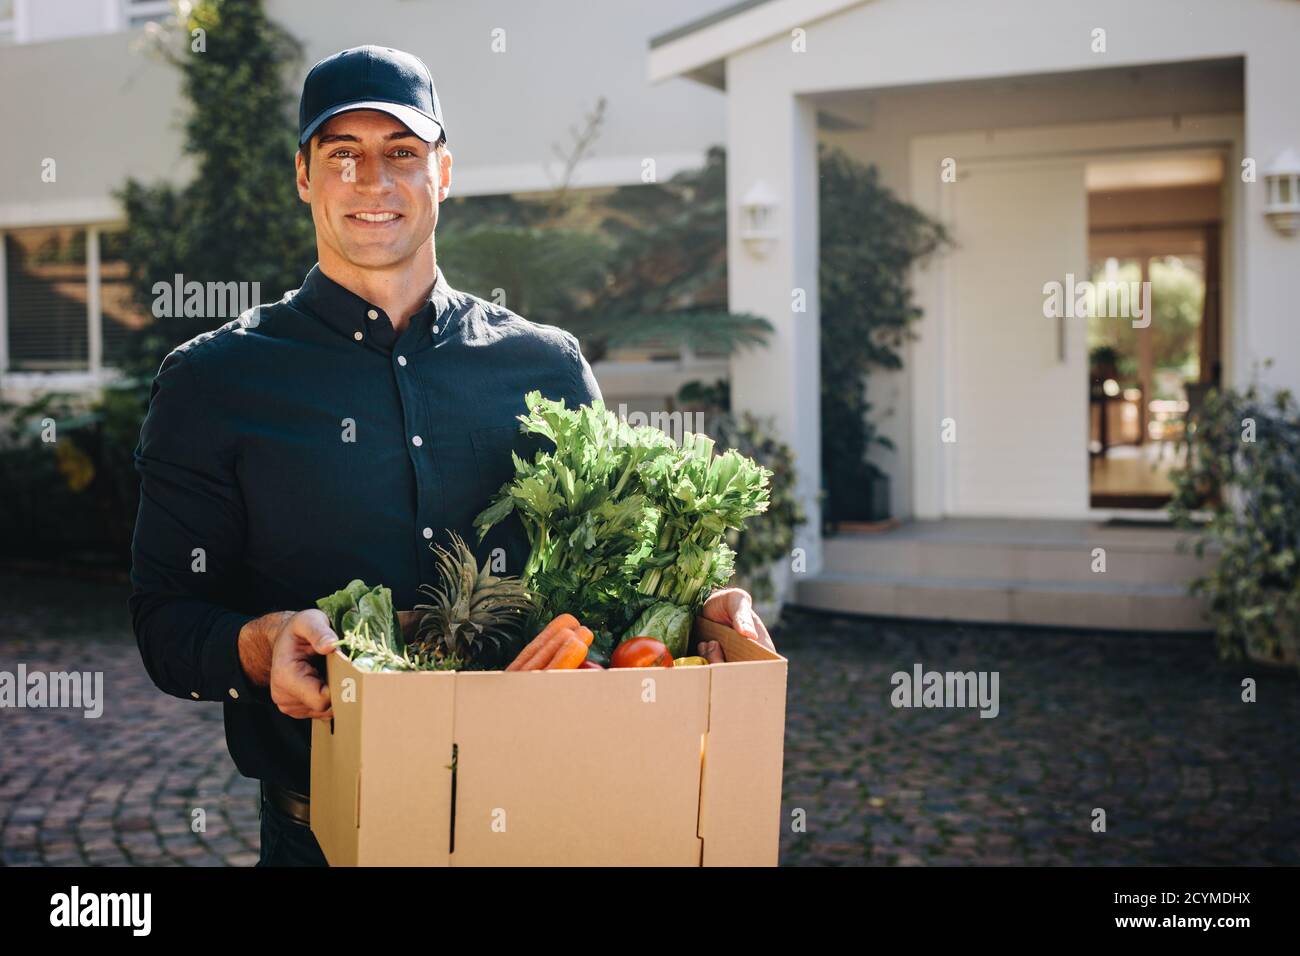 Mann hält eine Schachtel Obst und Gemüse im Freien und schaut auf die Kamera. Lieferperson, die online bestellte Lebensmittel an die Heimatadresse liefert. Stockfoto